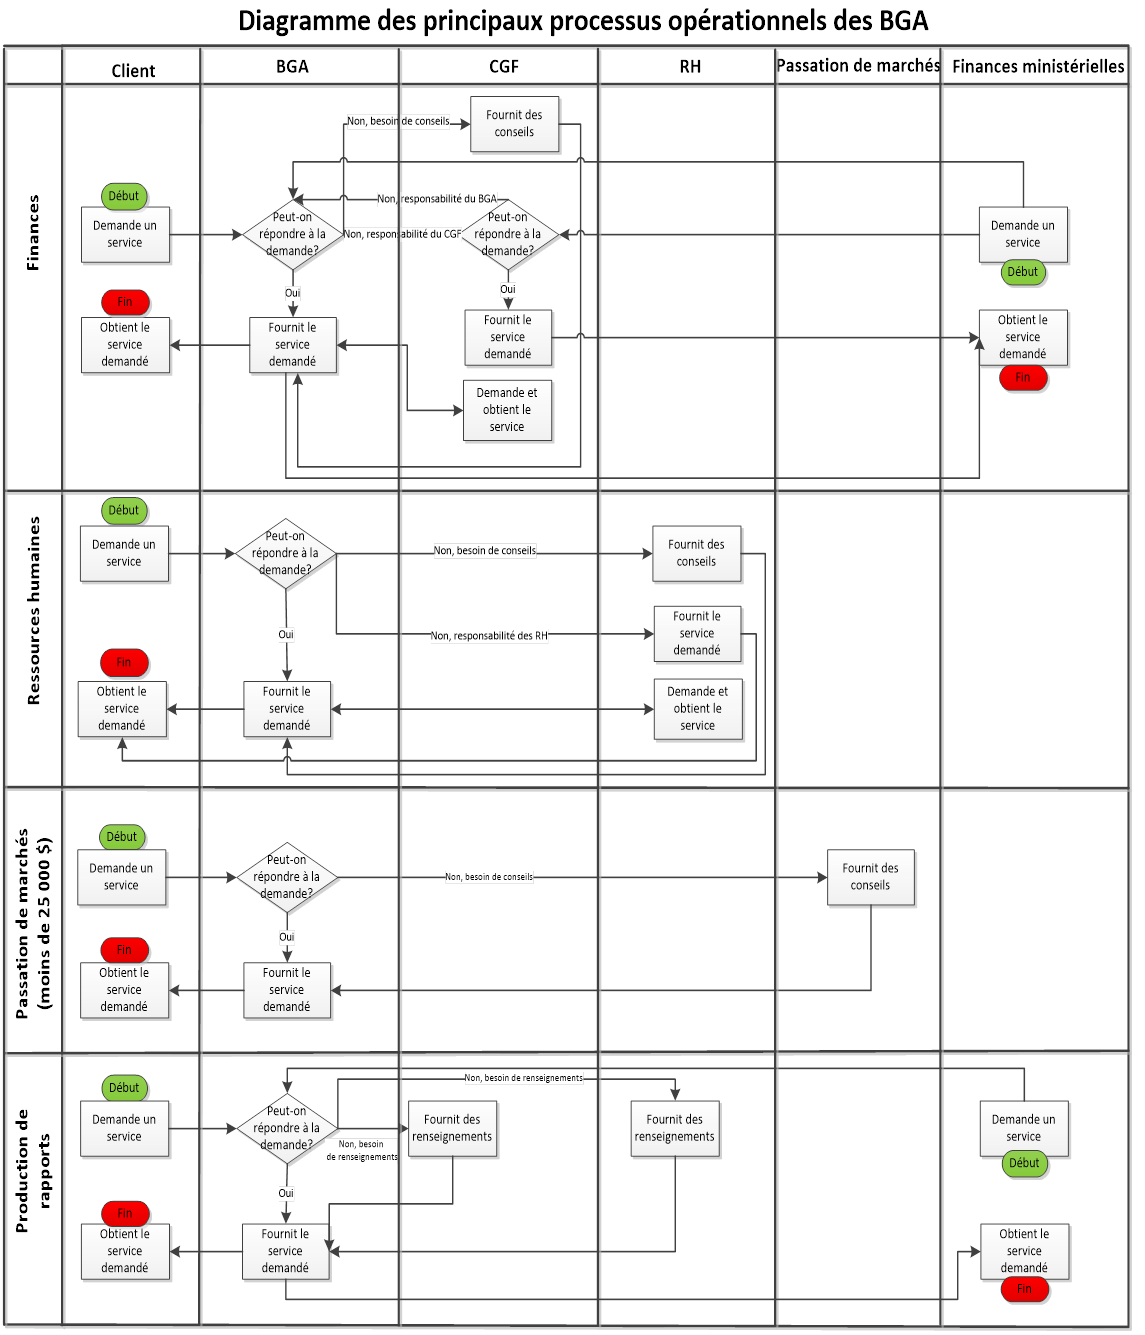 Diagramme des principaux processus opérationnels des BGA